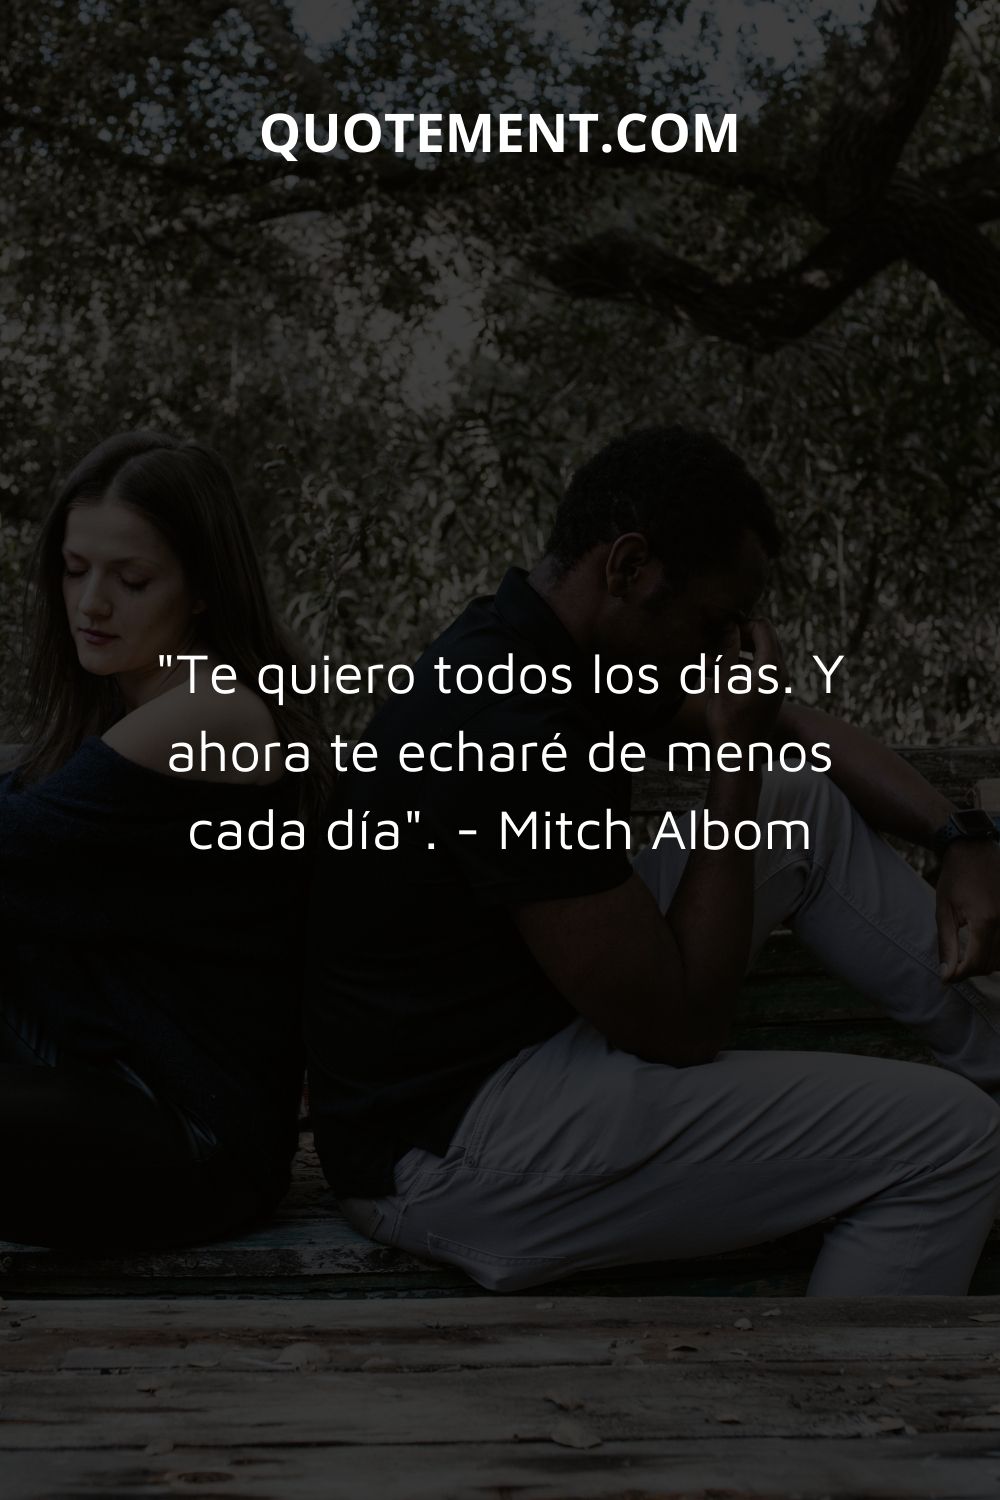 "Te quiero todos los días. Y ahora te echaré de menos cada día". - Mitch Albom